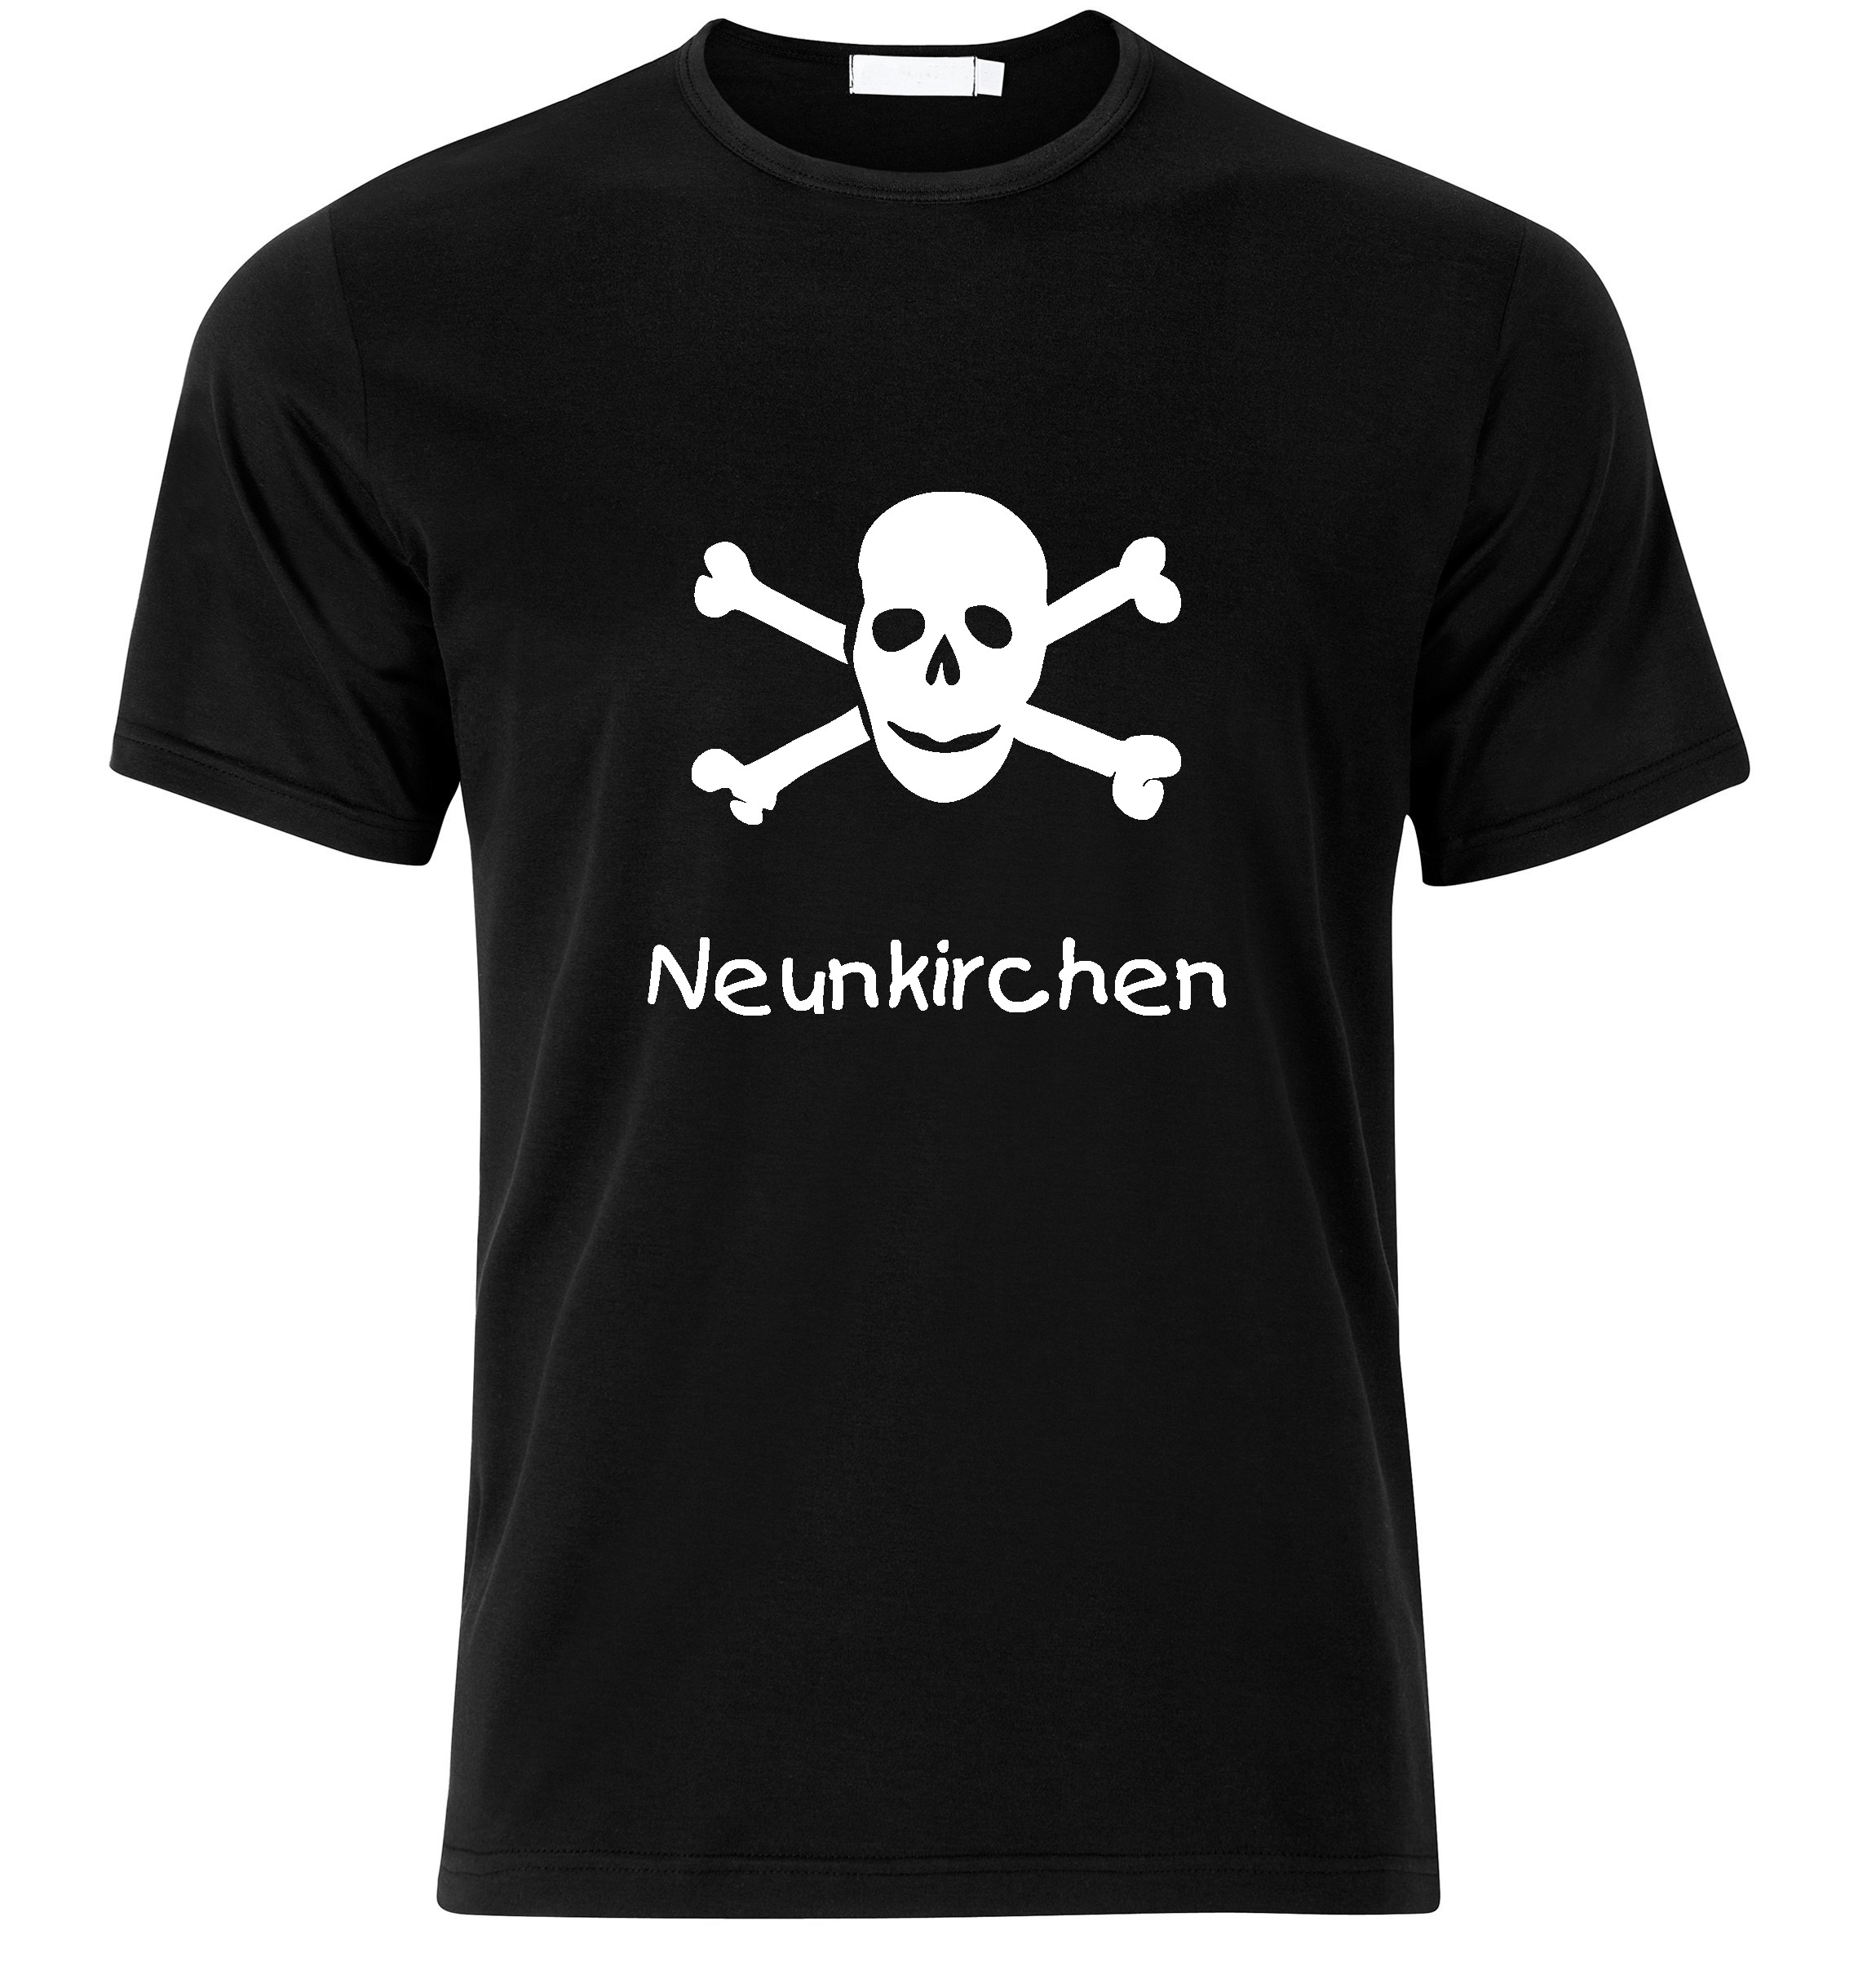 T-Shirt Neunkirchen Jolly Roger, Totenkopf